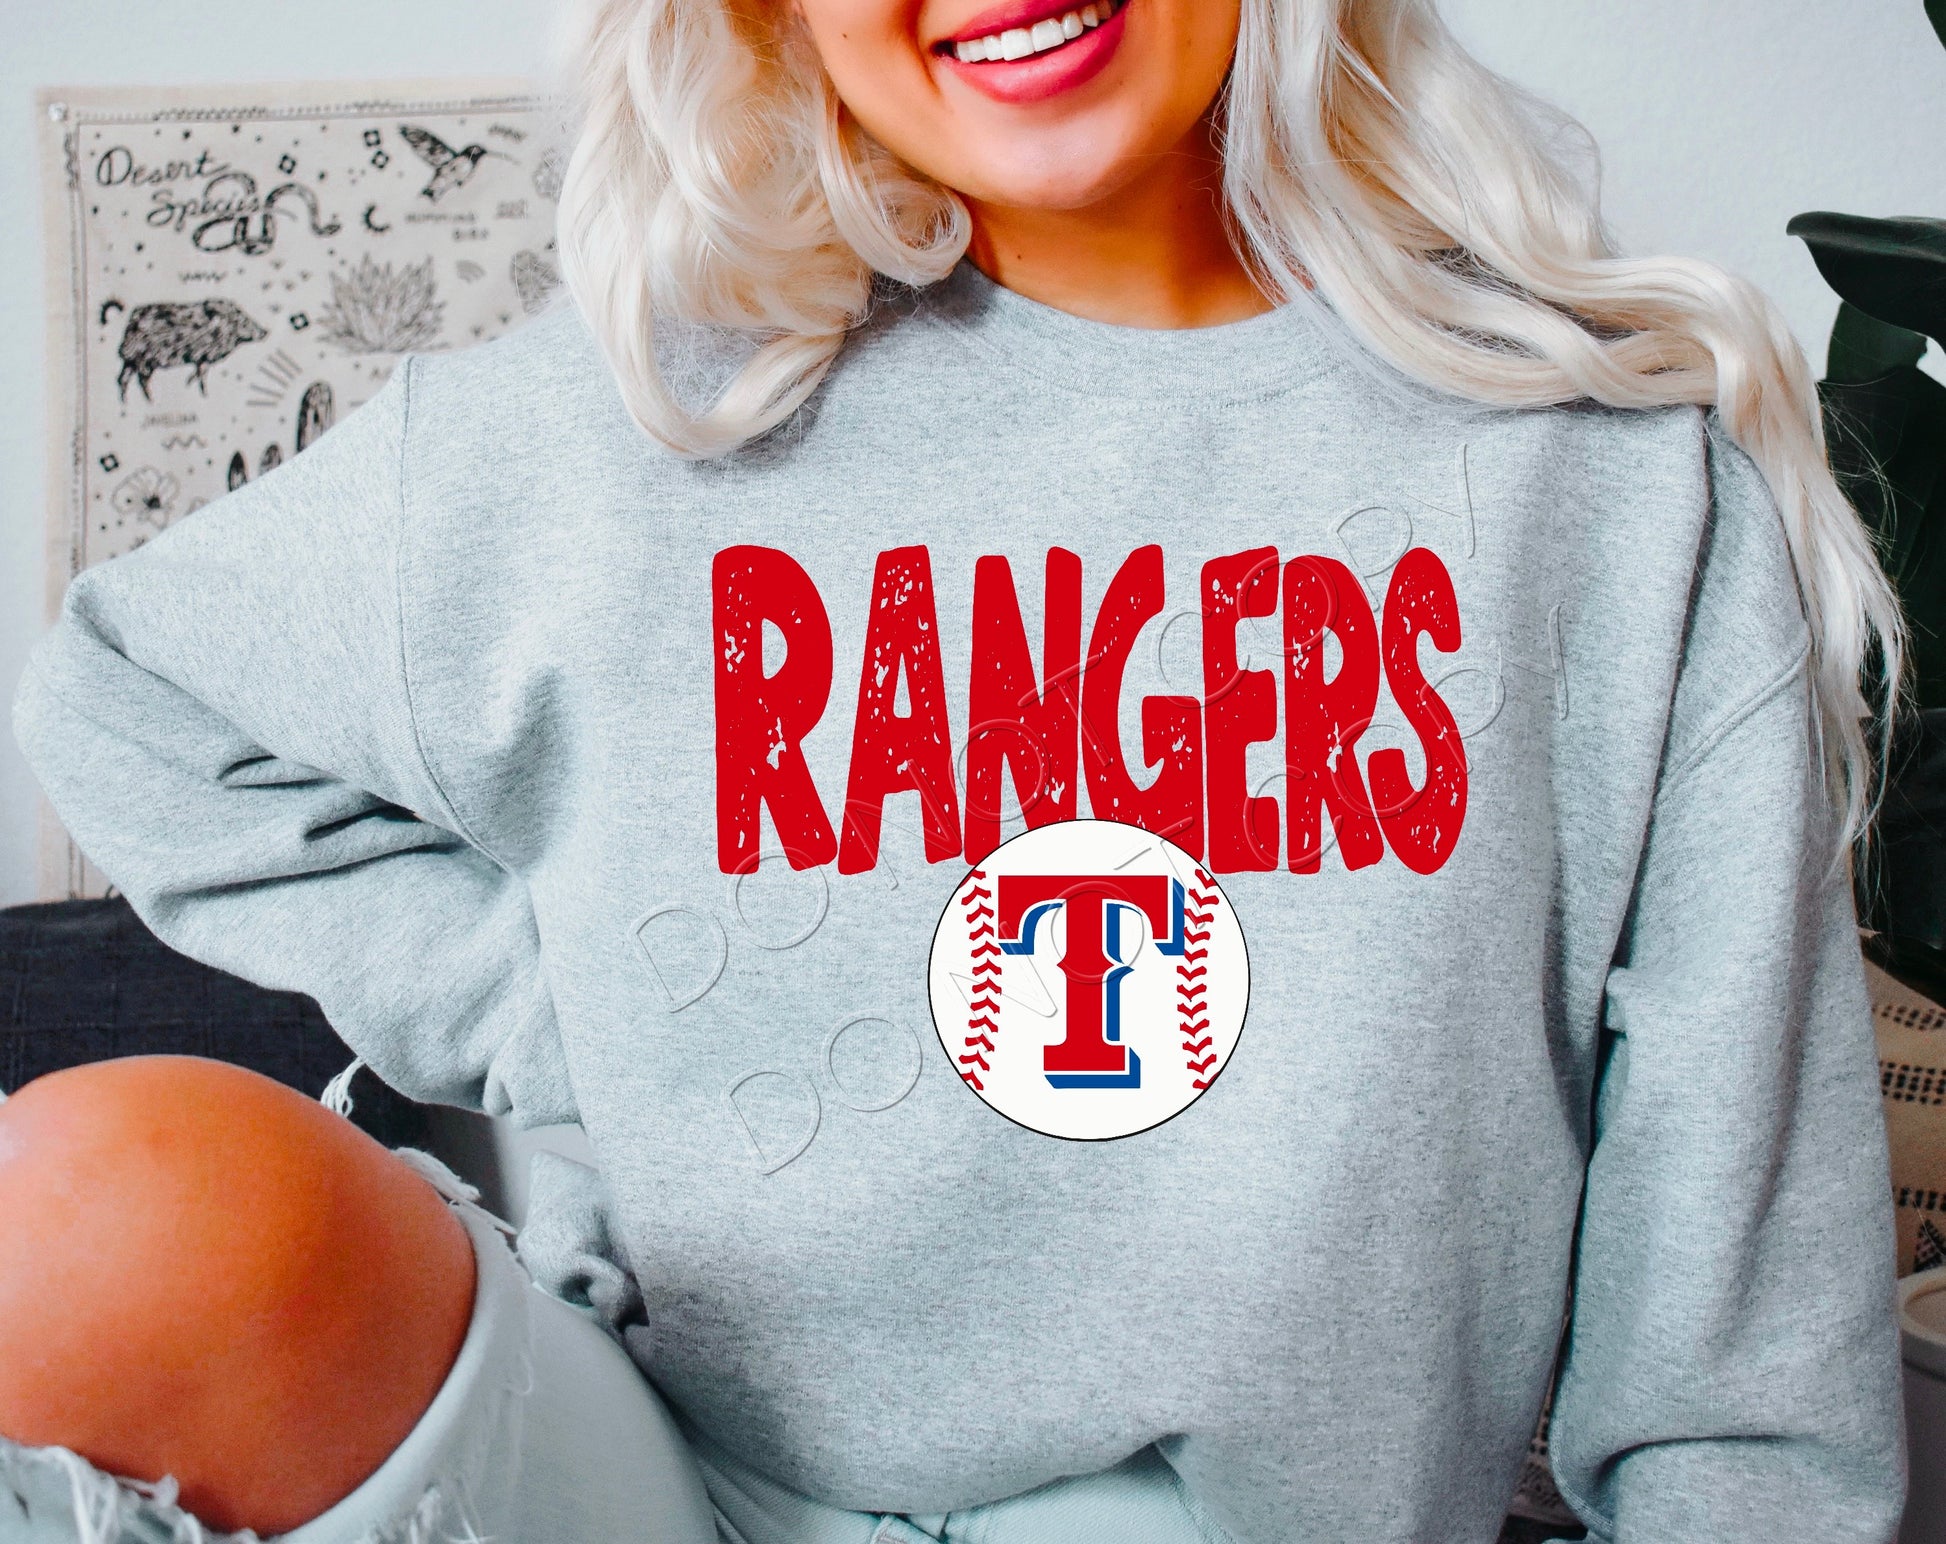 Texas Rangers Baseball DTF Transfer